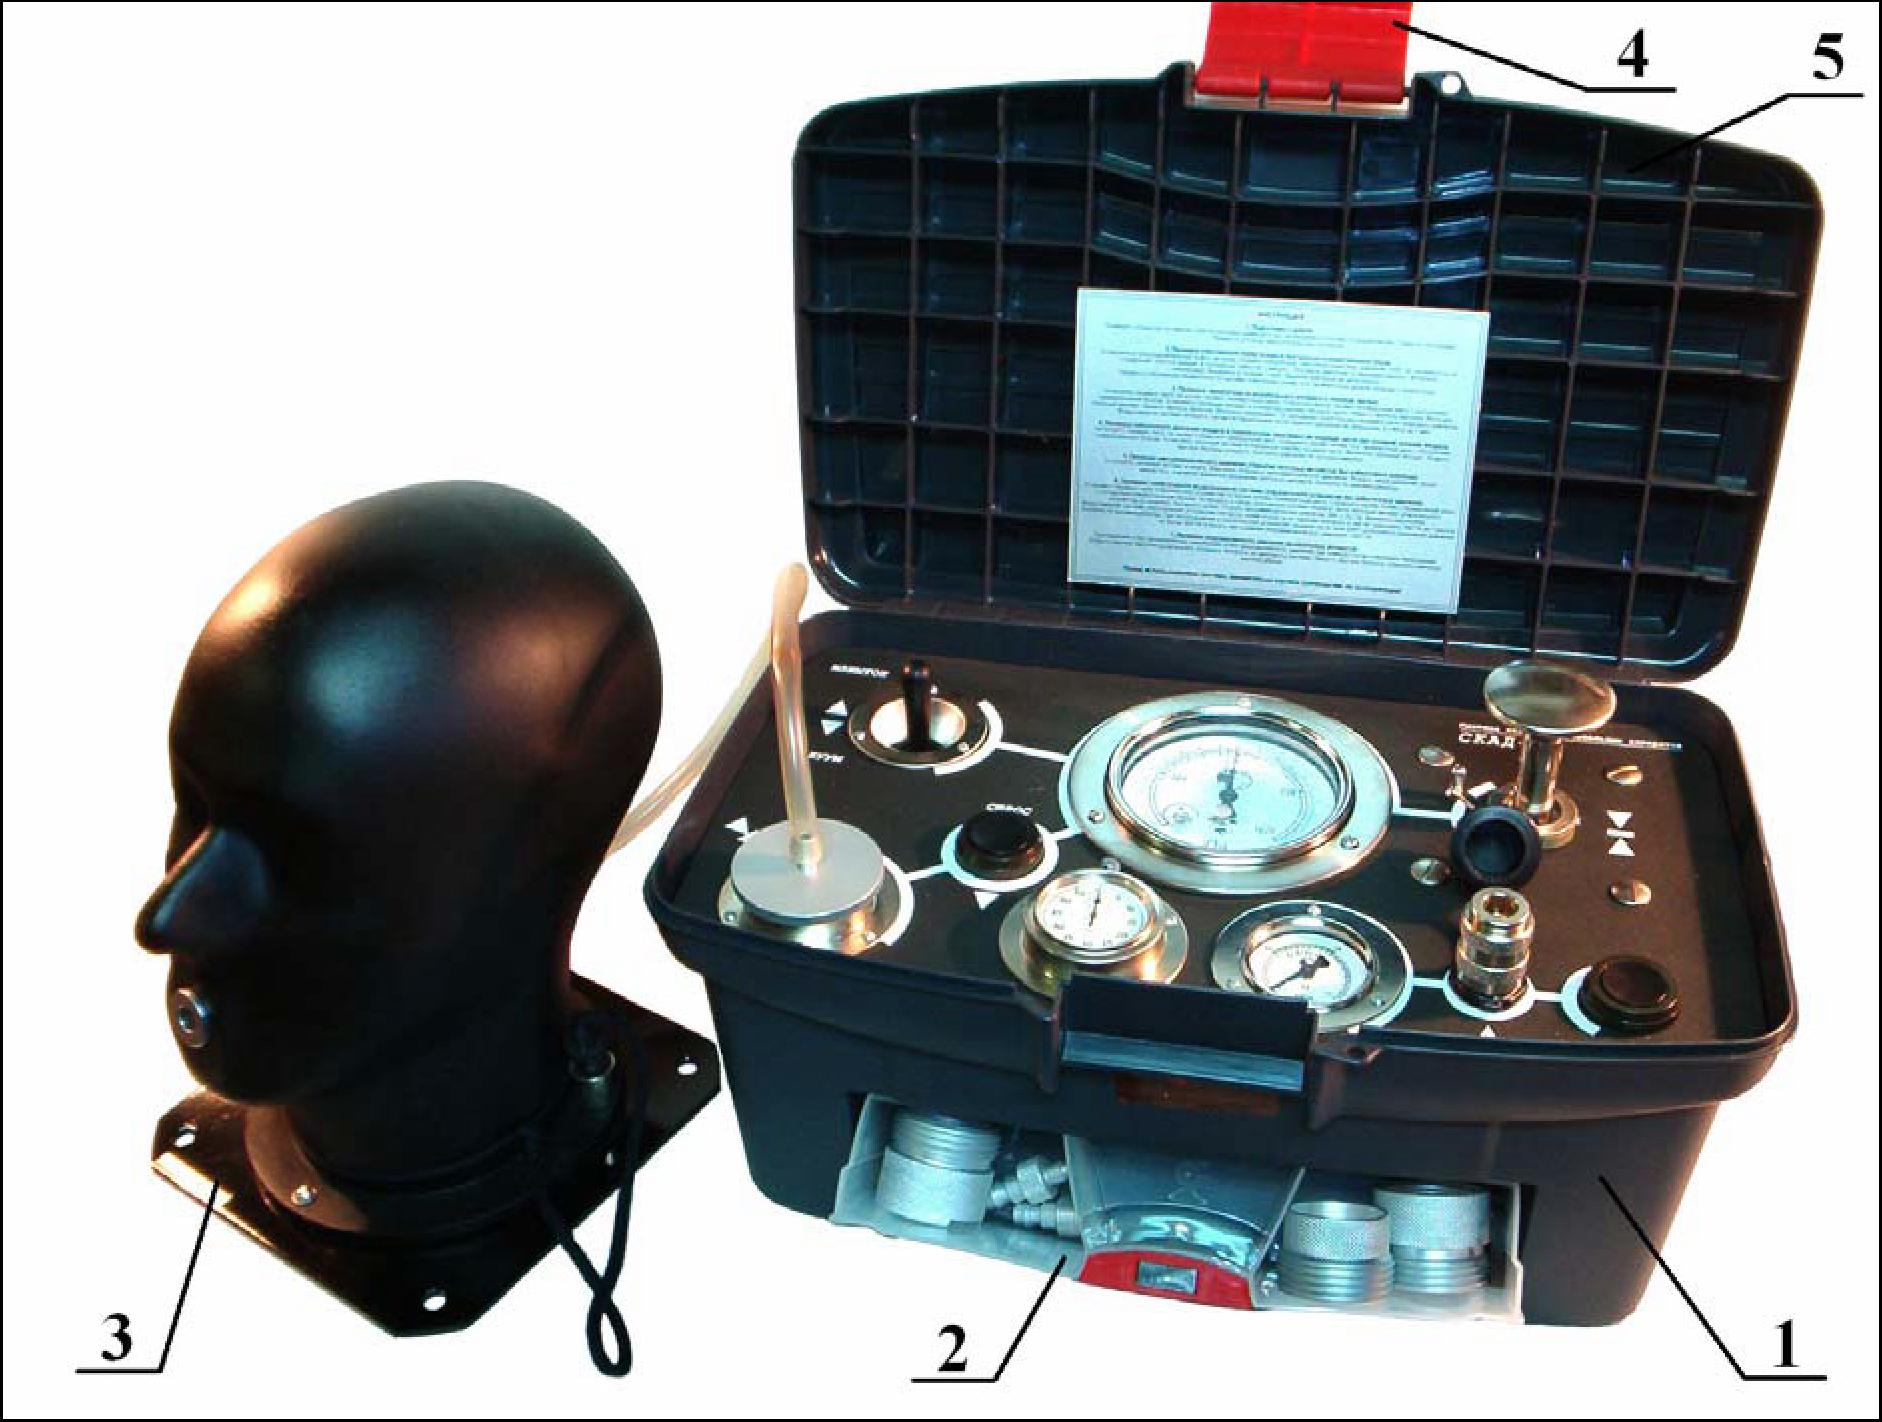 Изолированный прибор. Прибор для проверки СИЗОД Скад-1. Система контроля дыхательных аппаратов Скад-1. Система контроля дыхательных аппаратов Скад 1 с муляжом головы. Скад 1 ГДЗС.